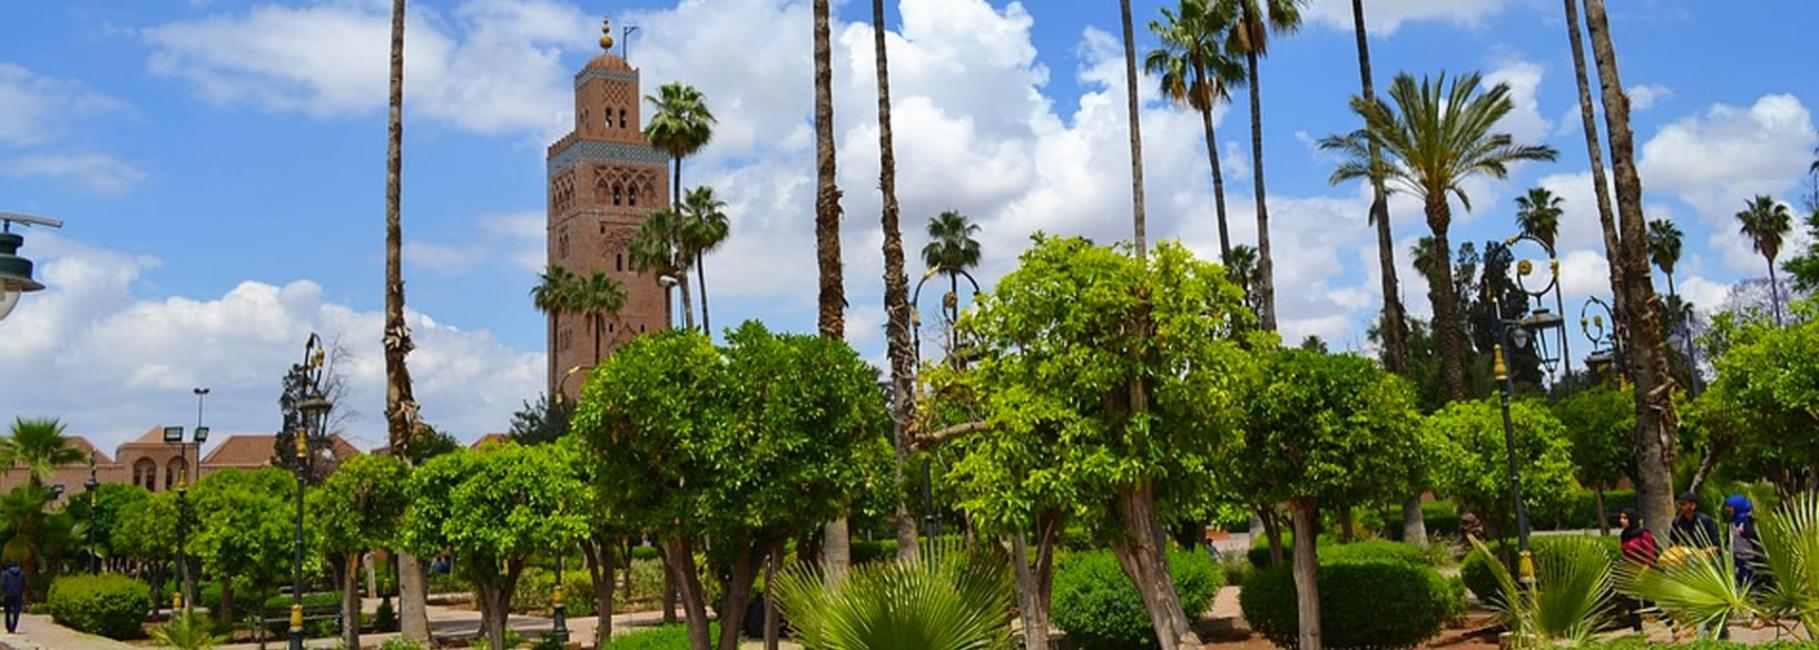 marrakech agriculture trip header slk fe